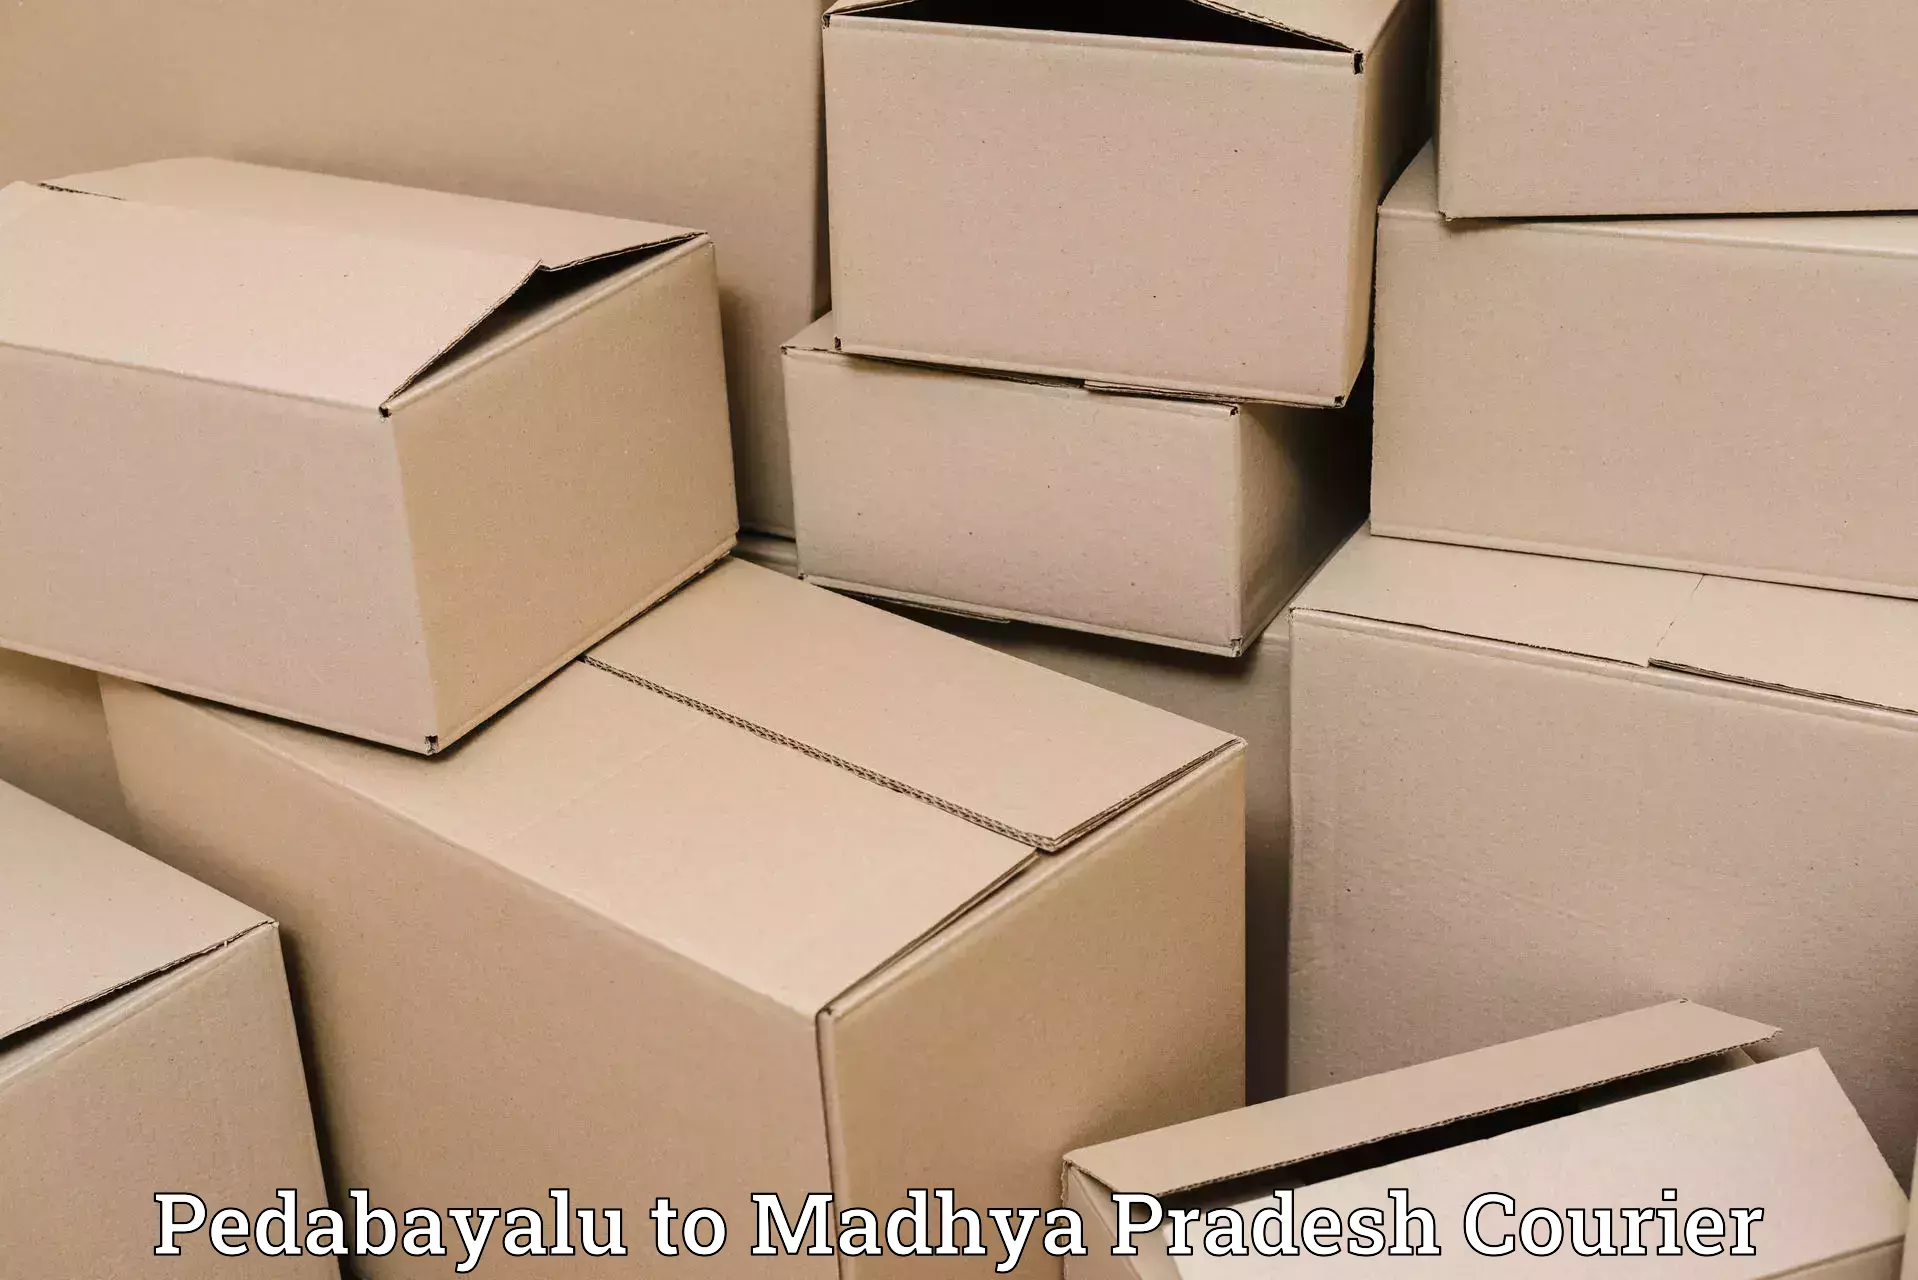 Quality courier partnerships Pedabayalu to Sehore